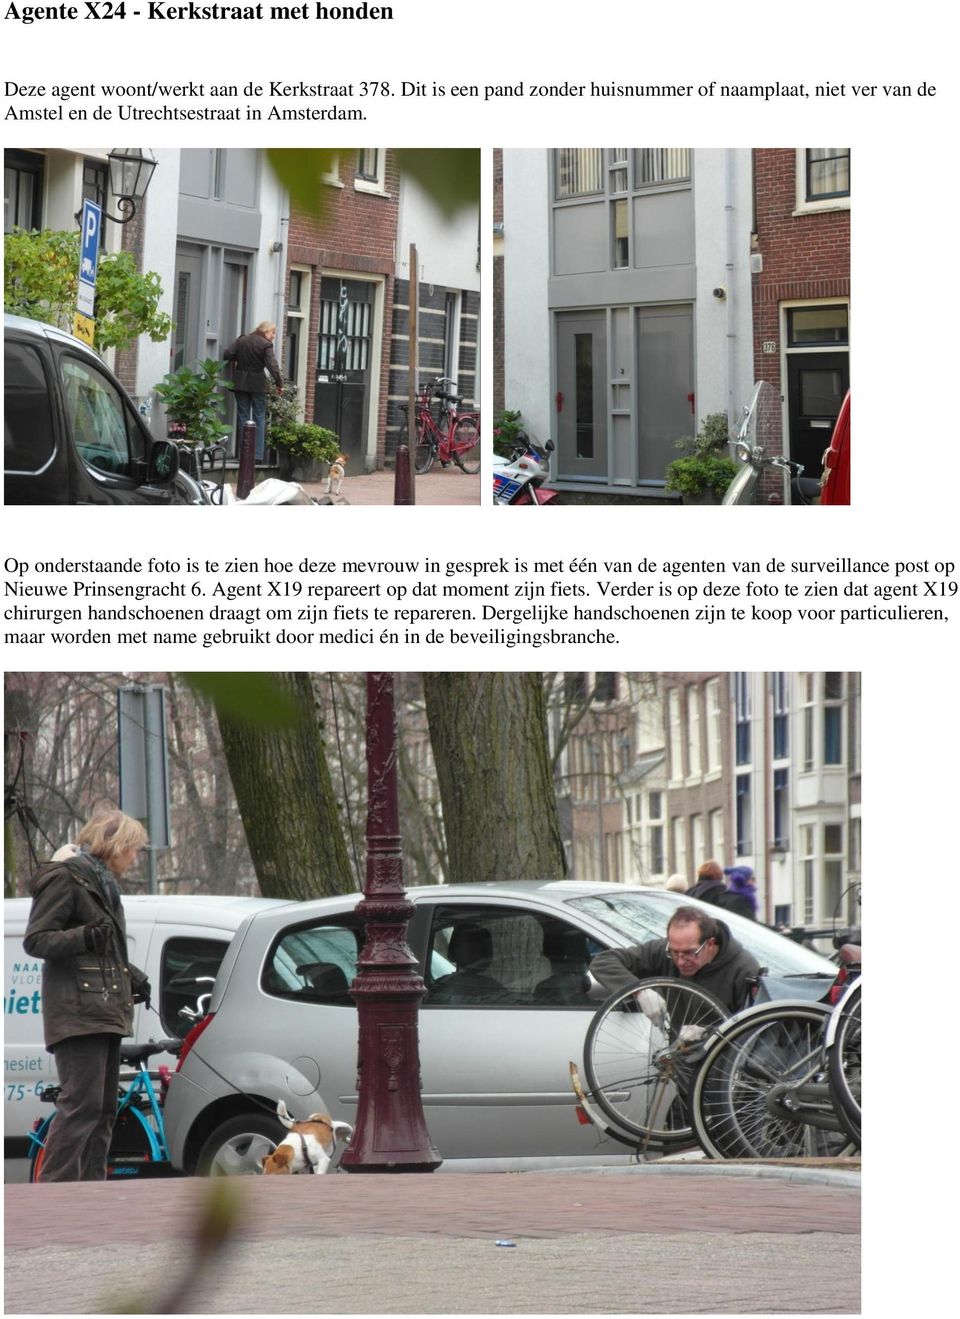 Op onderstaande foto is te zien hoe deze mevrouw in gesprek is met één van de agenten van de surveillance post op Nieuwe Prinsengracht 6.